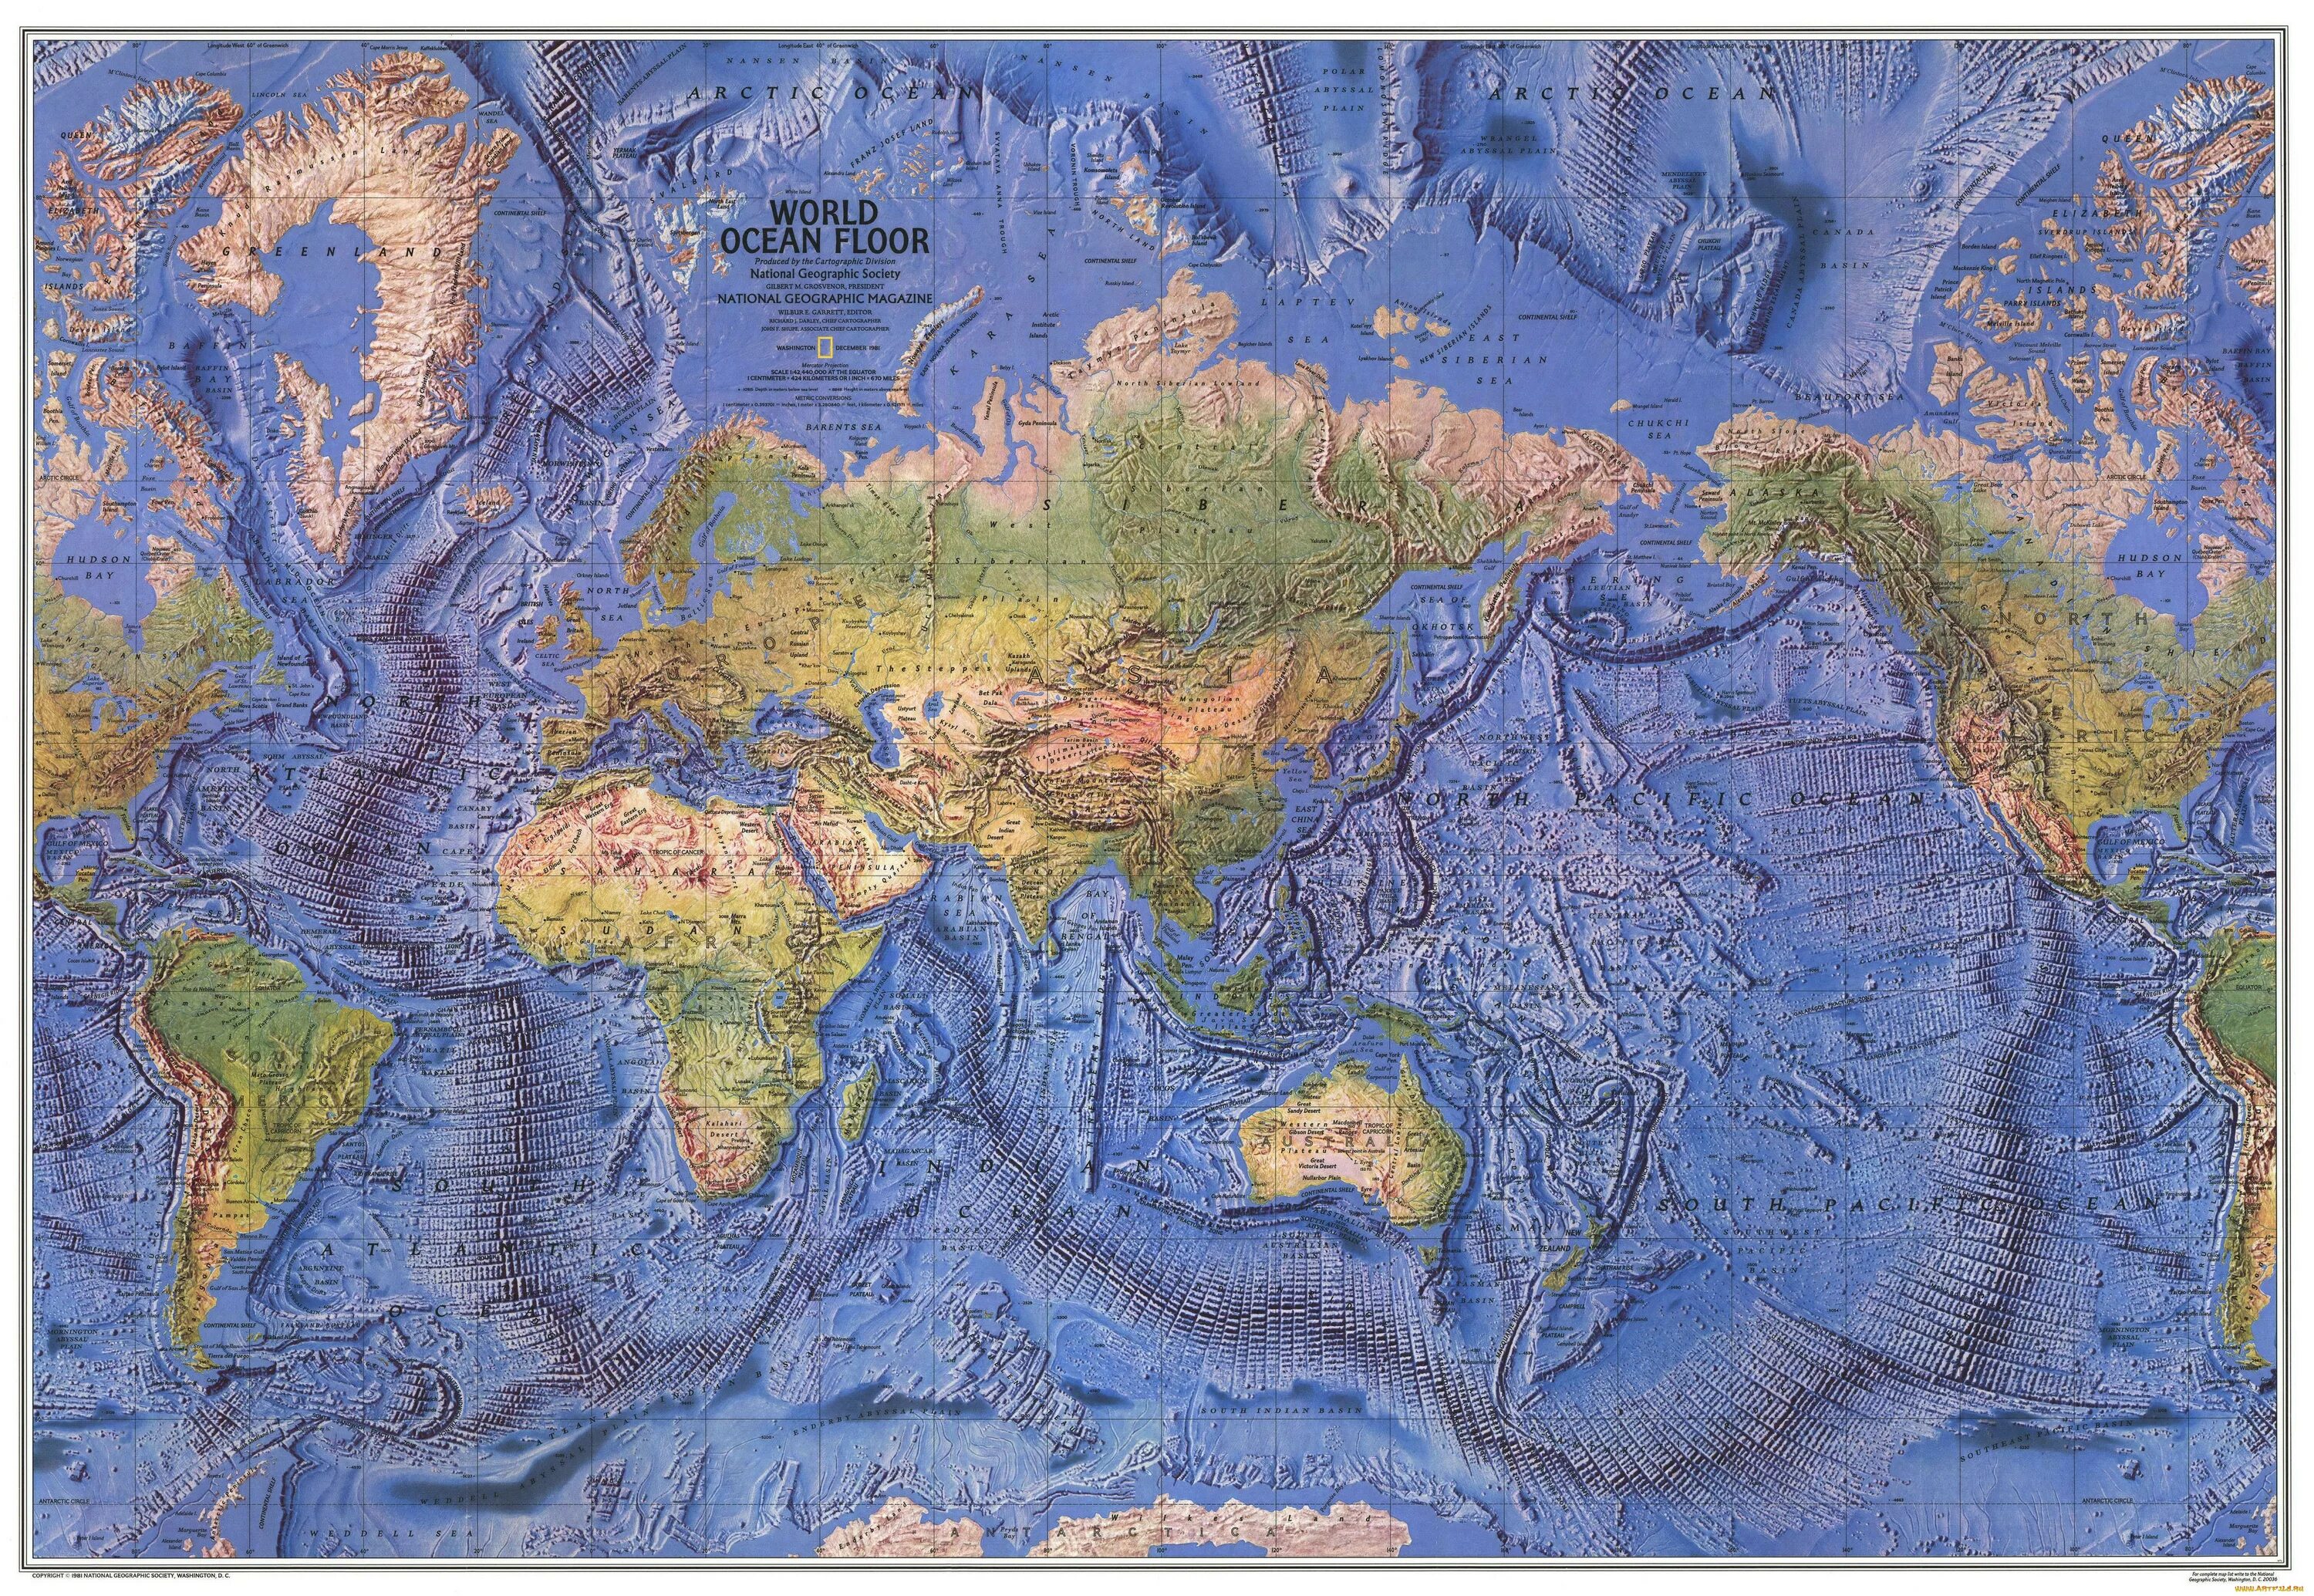 Глубь материка. Карта дна мирового океана с глубинами.